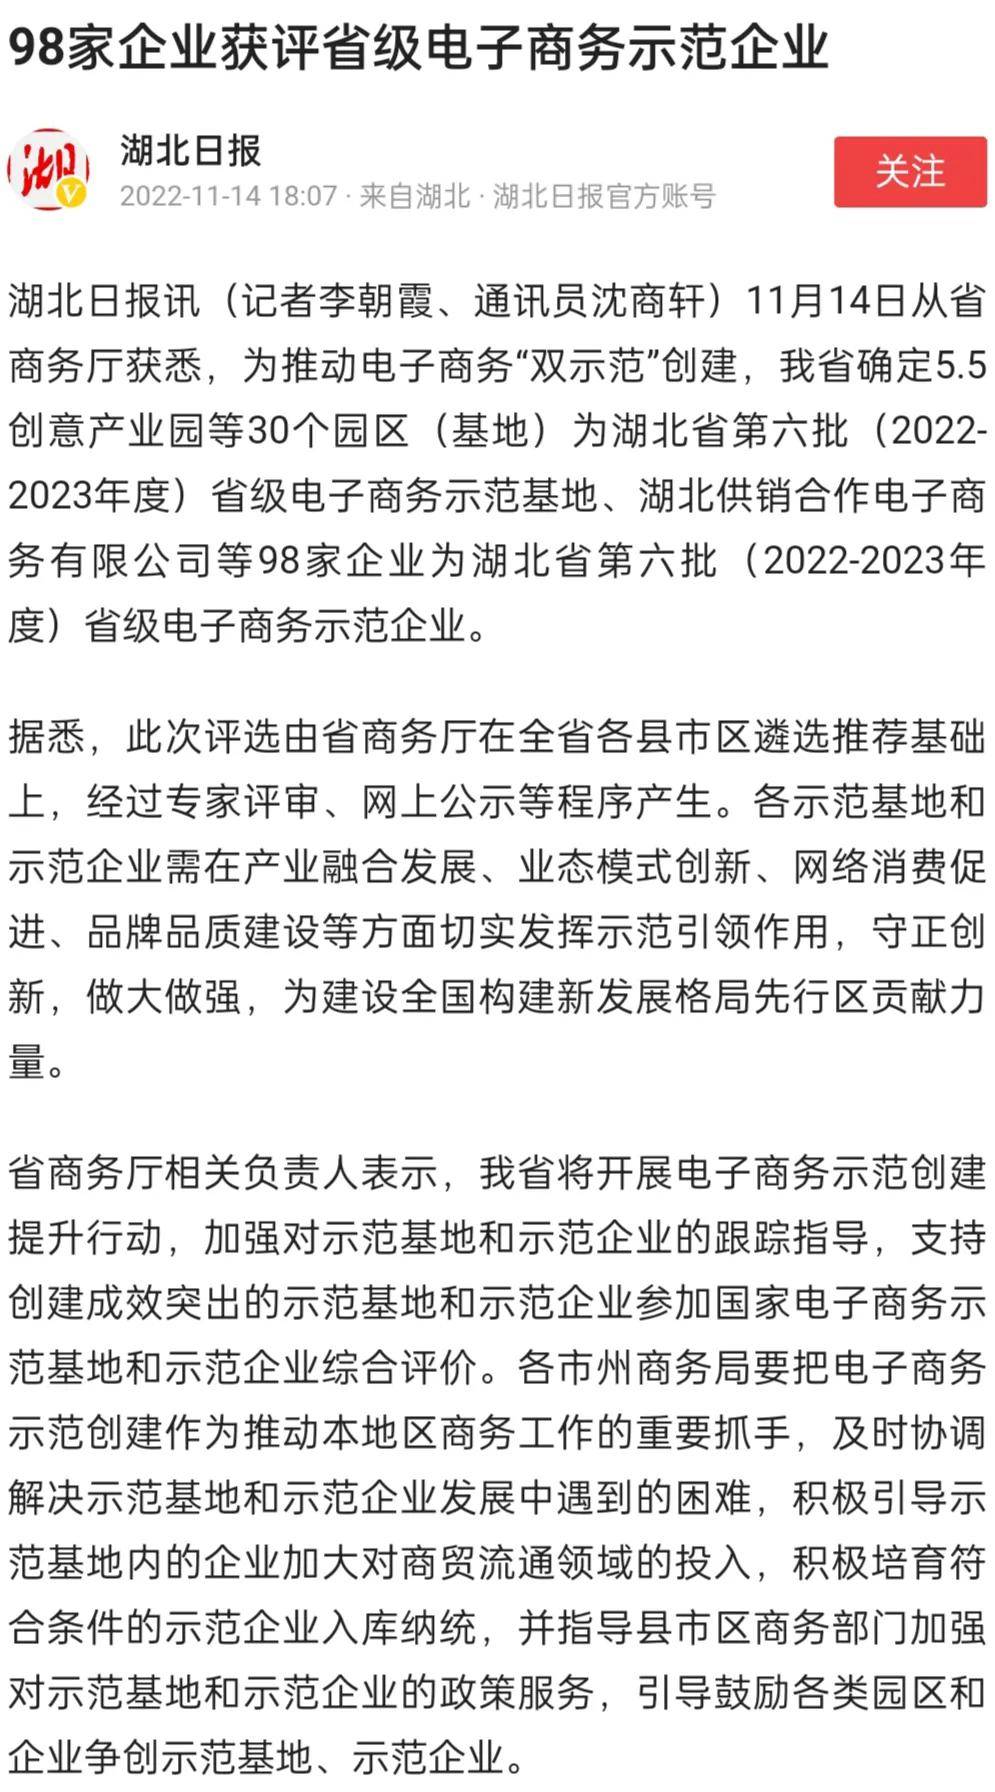 襄阳1产业园7企业上榜省级示范名单(襄阳跨境电商)